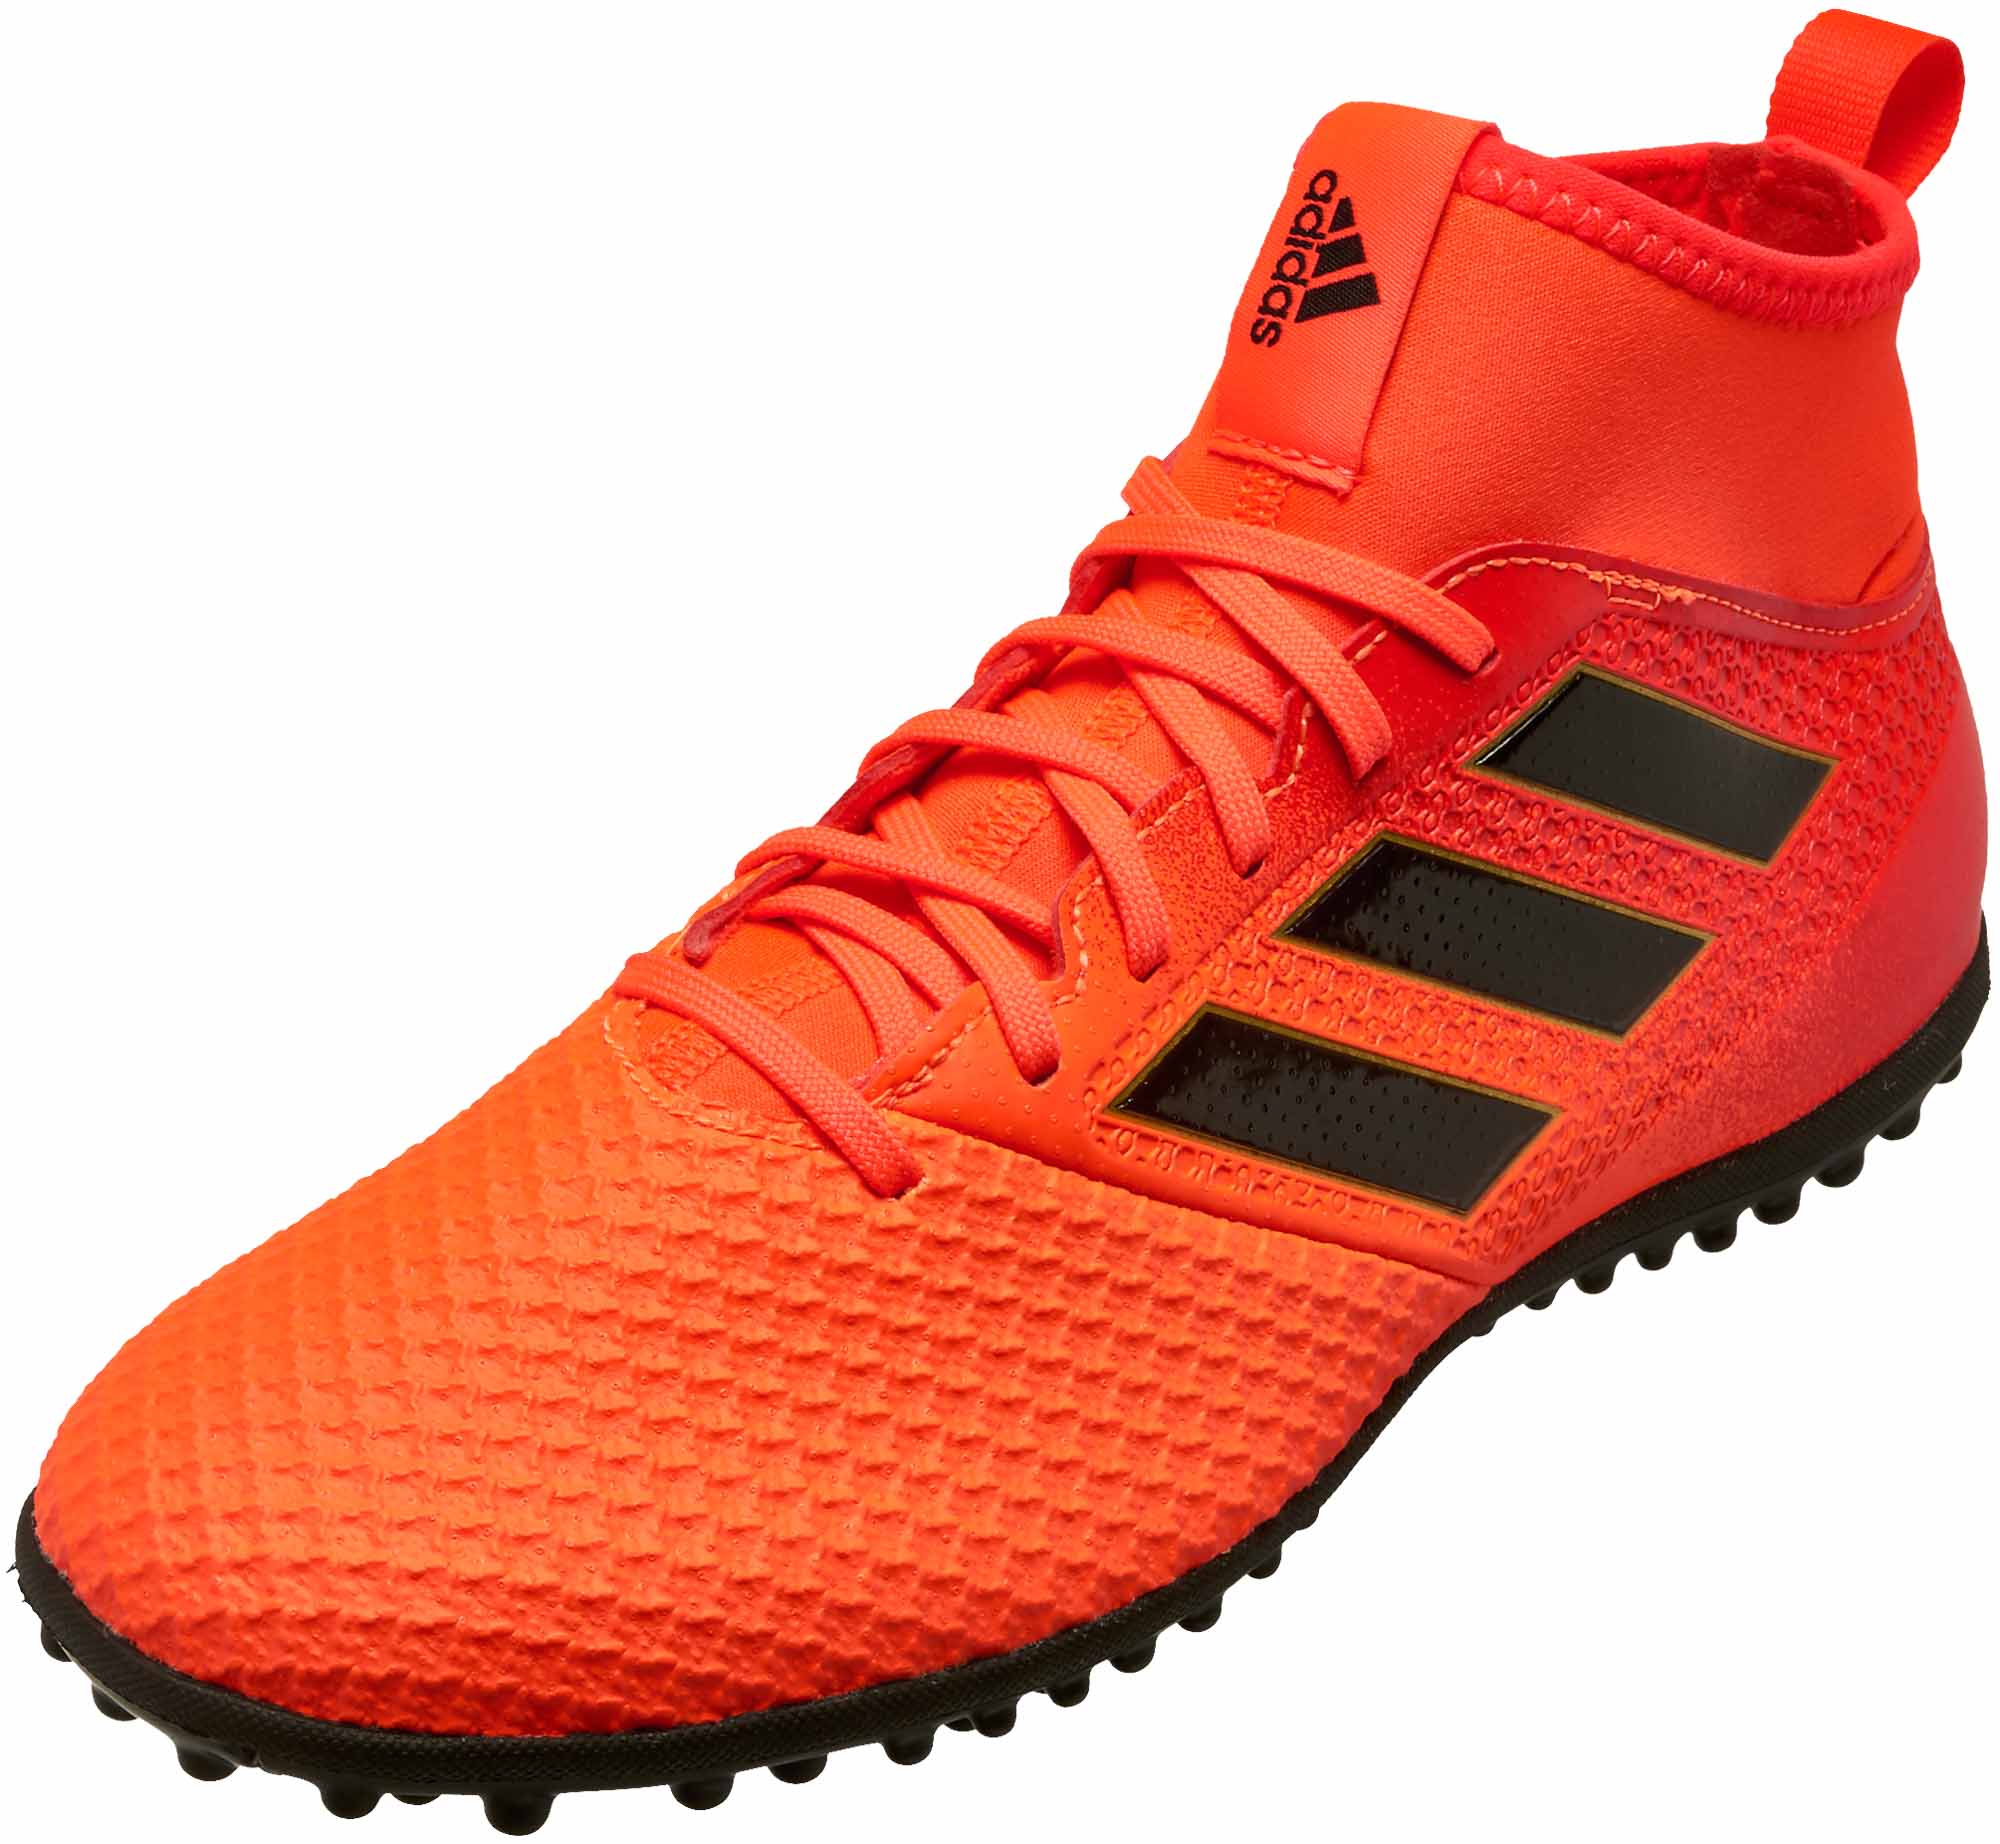 adidas men's ace tango 17.3 turf soccer shoe